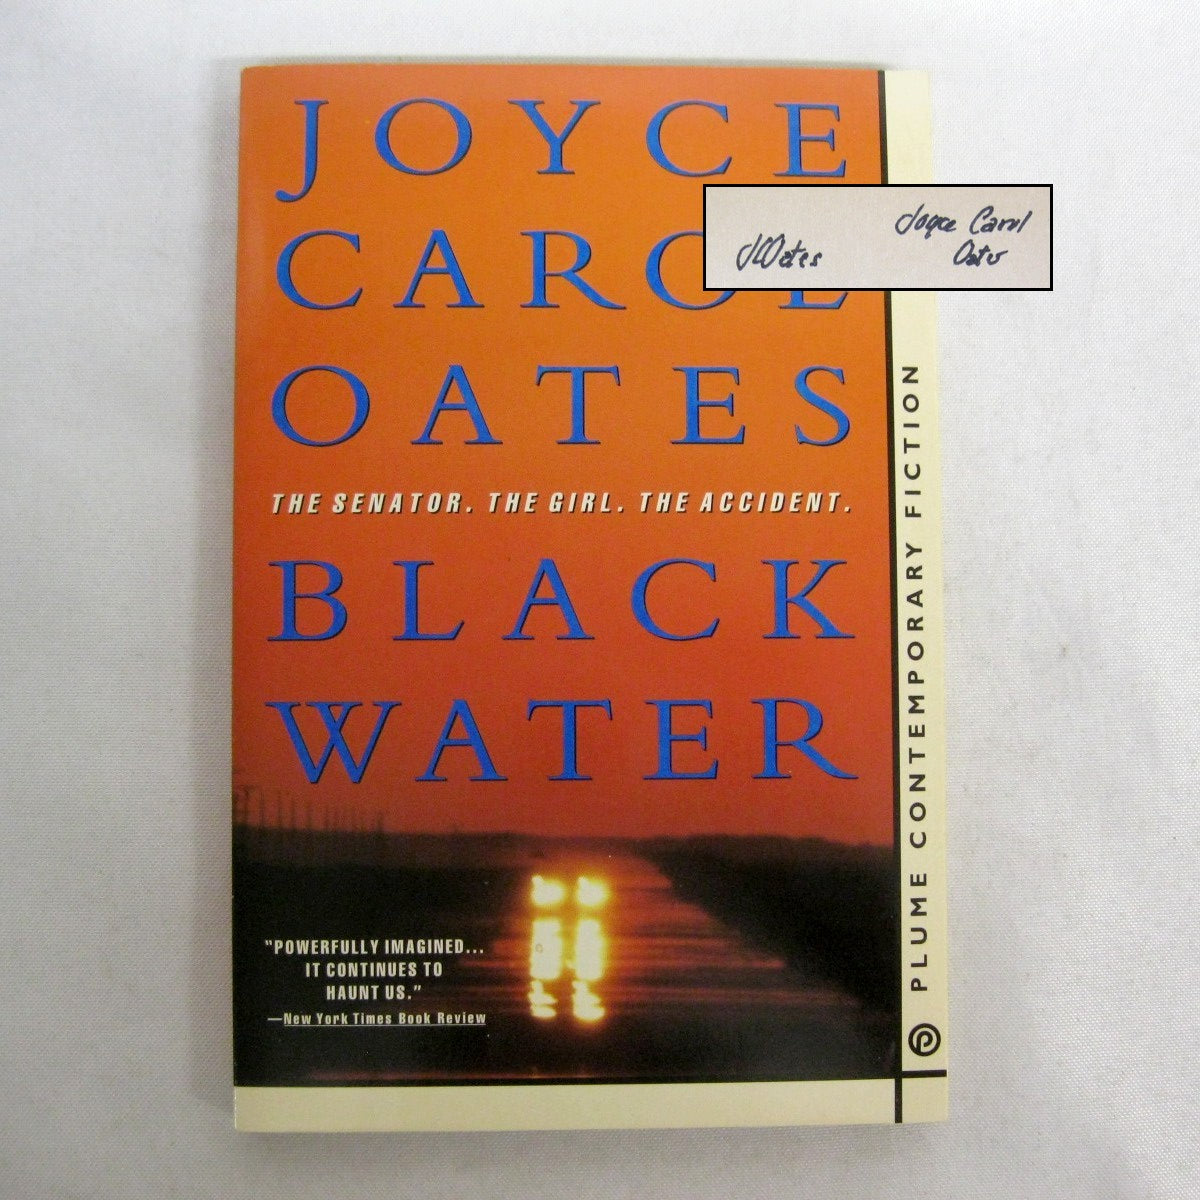 Black Water by Joyce Carol Oates